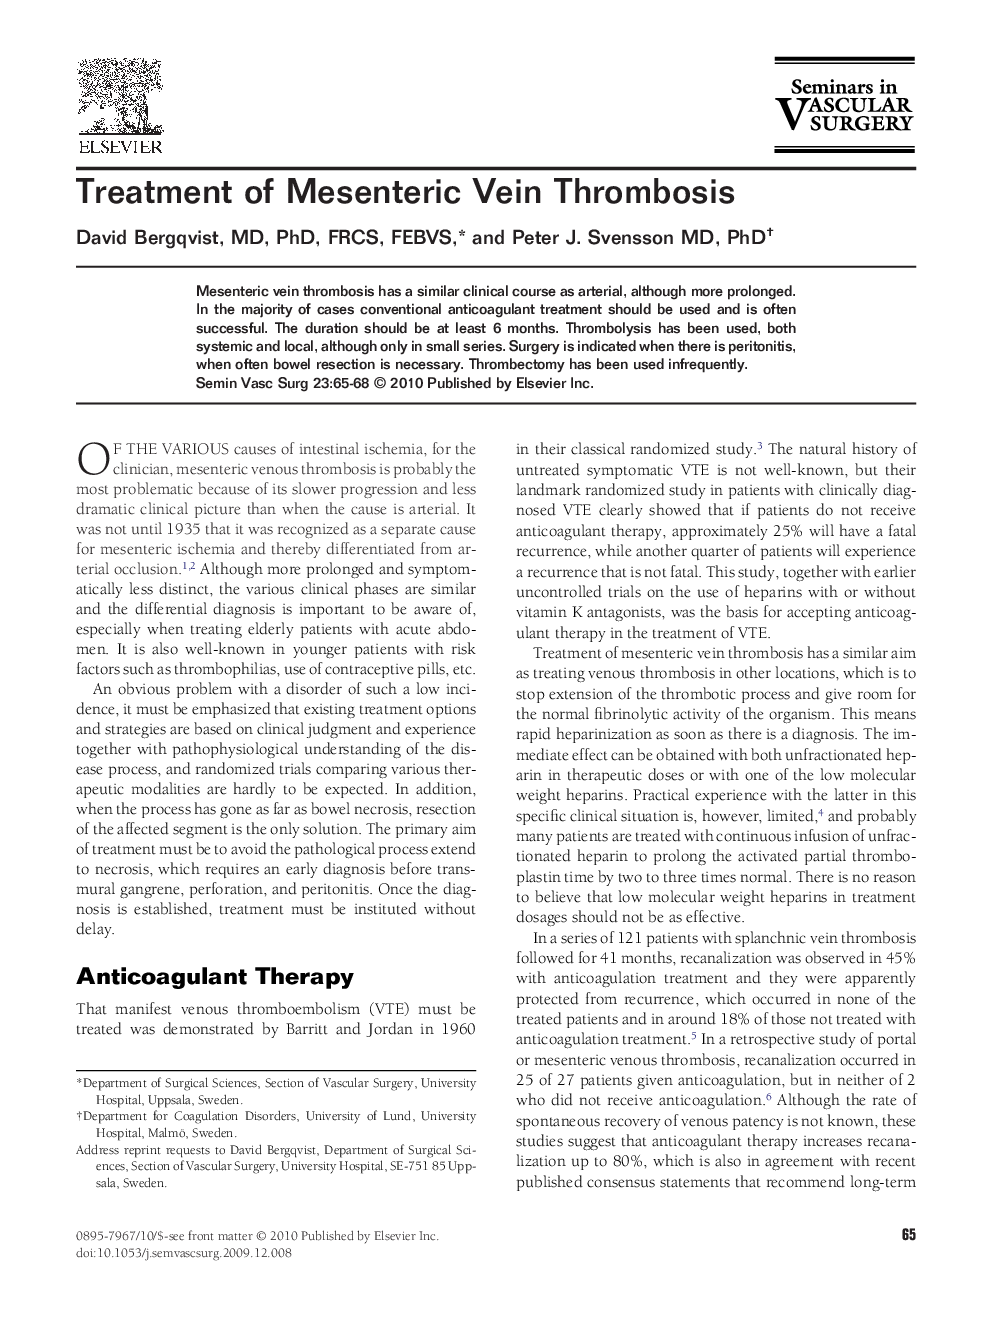 Treatment of Mesenteric Vein Thrombosis